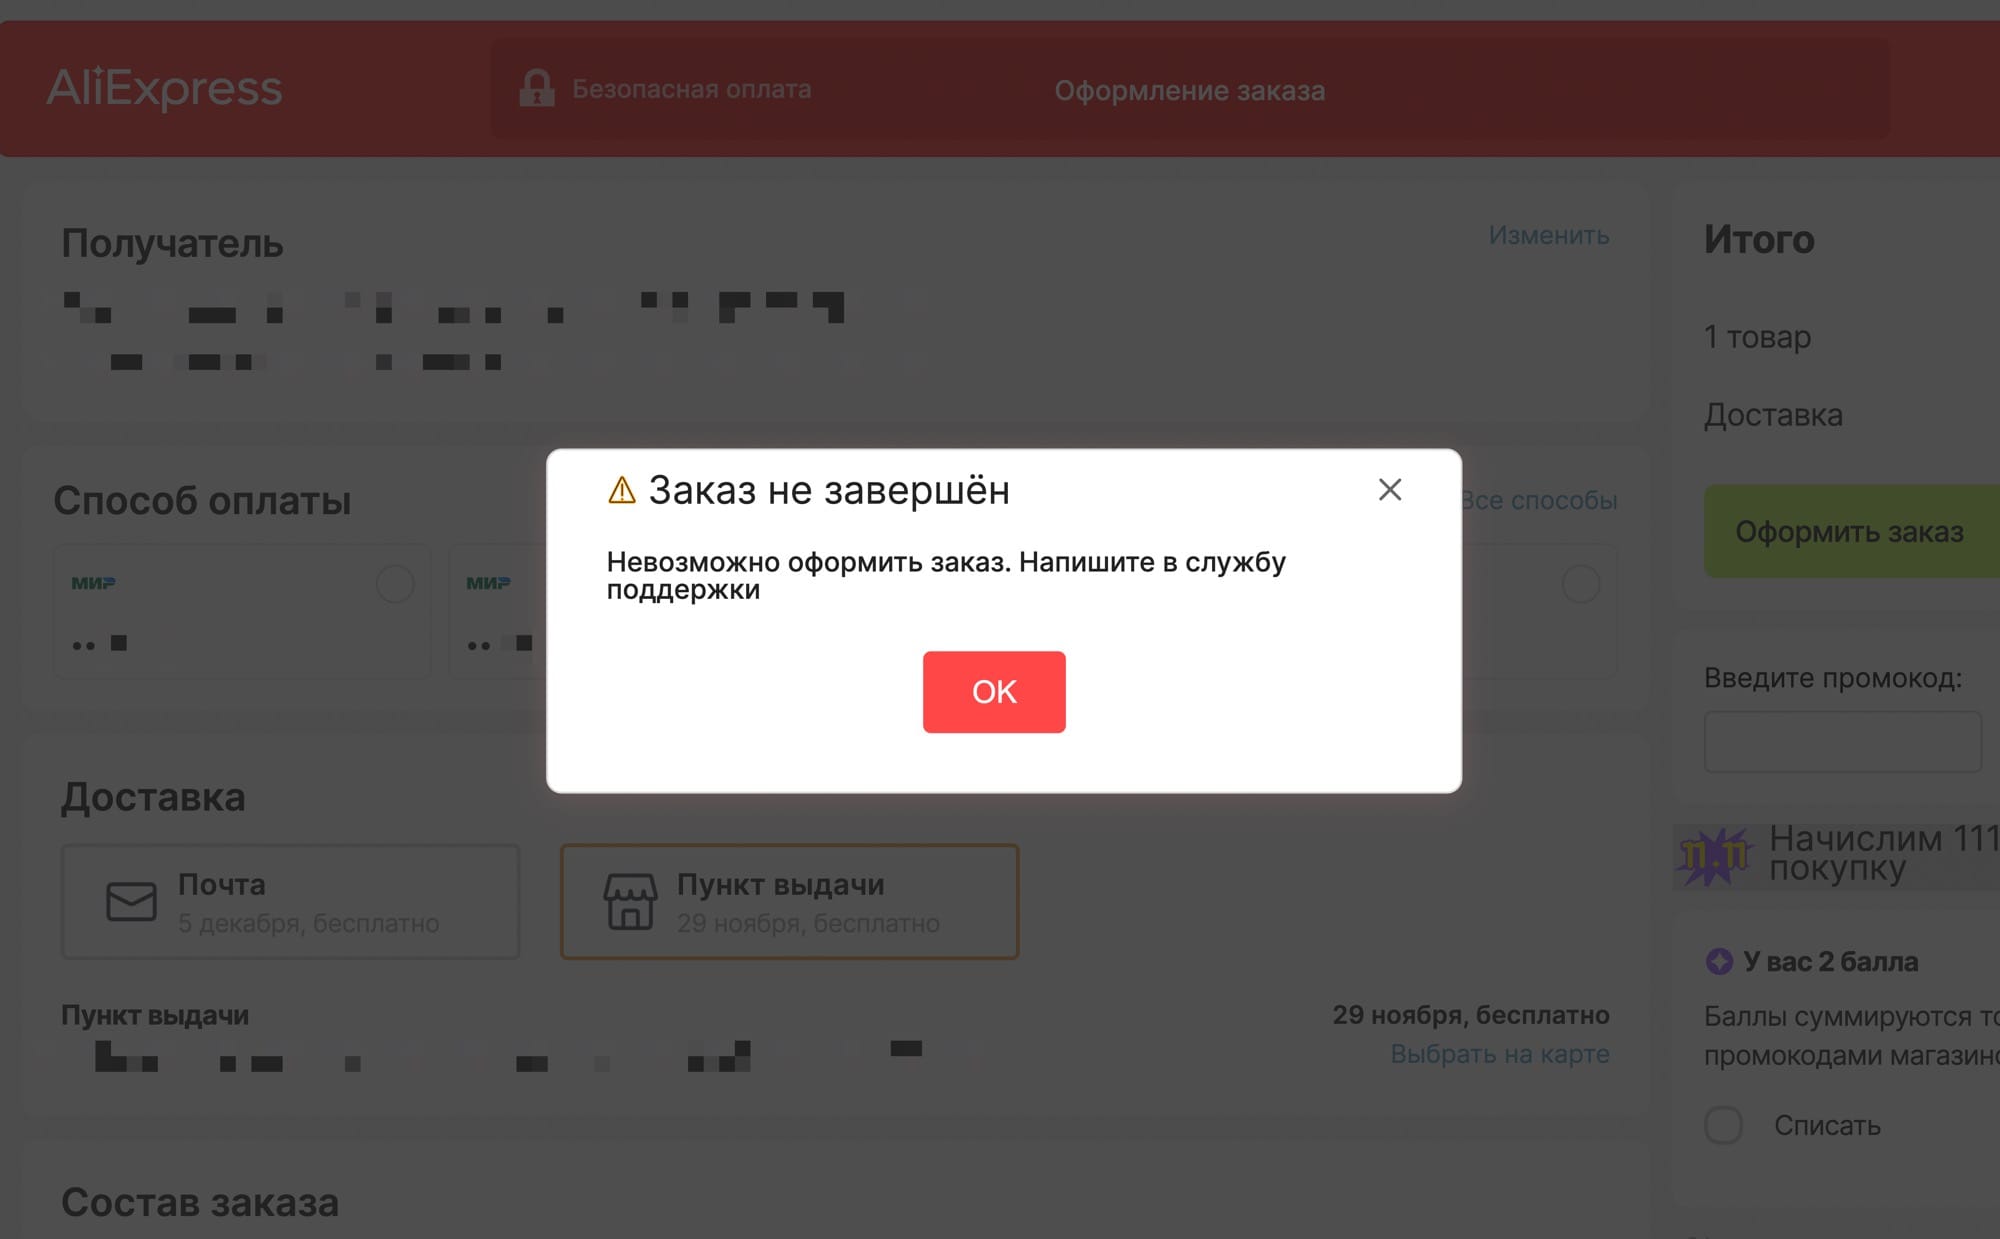 Как совершать покупки на AliExpress в году - Hi-Tech paraskevat.ru